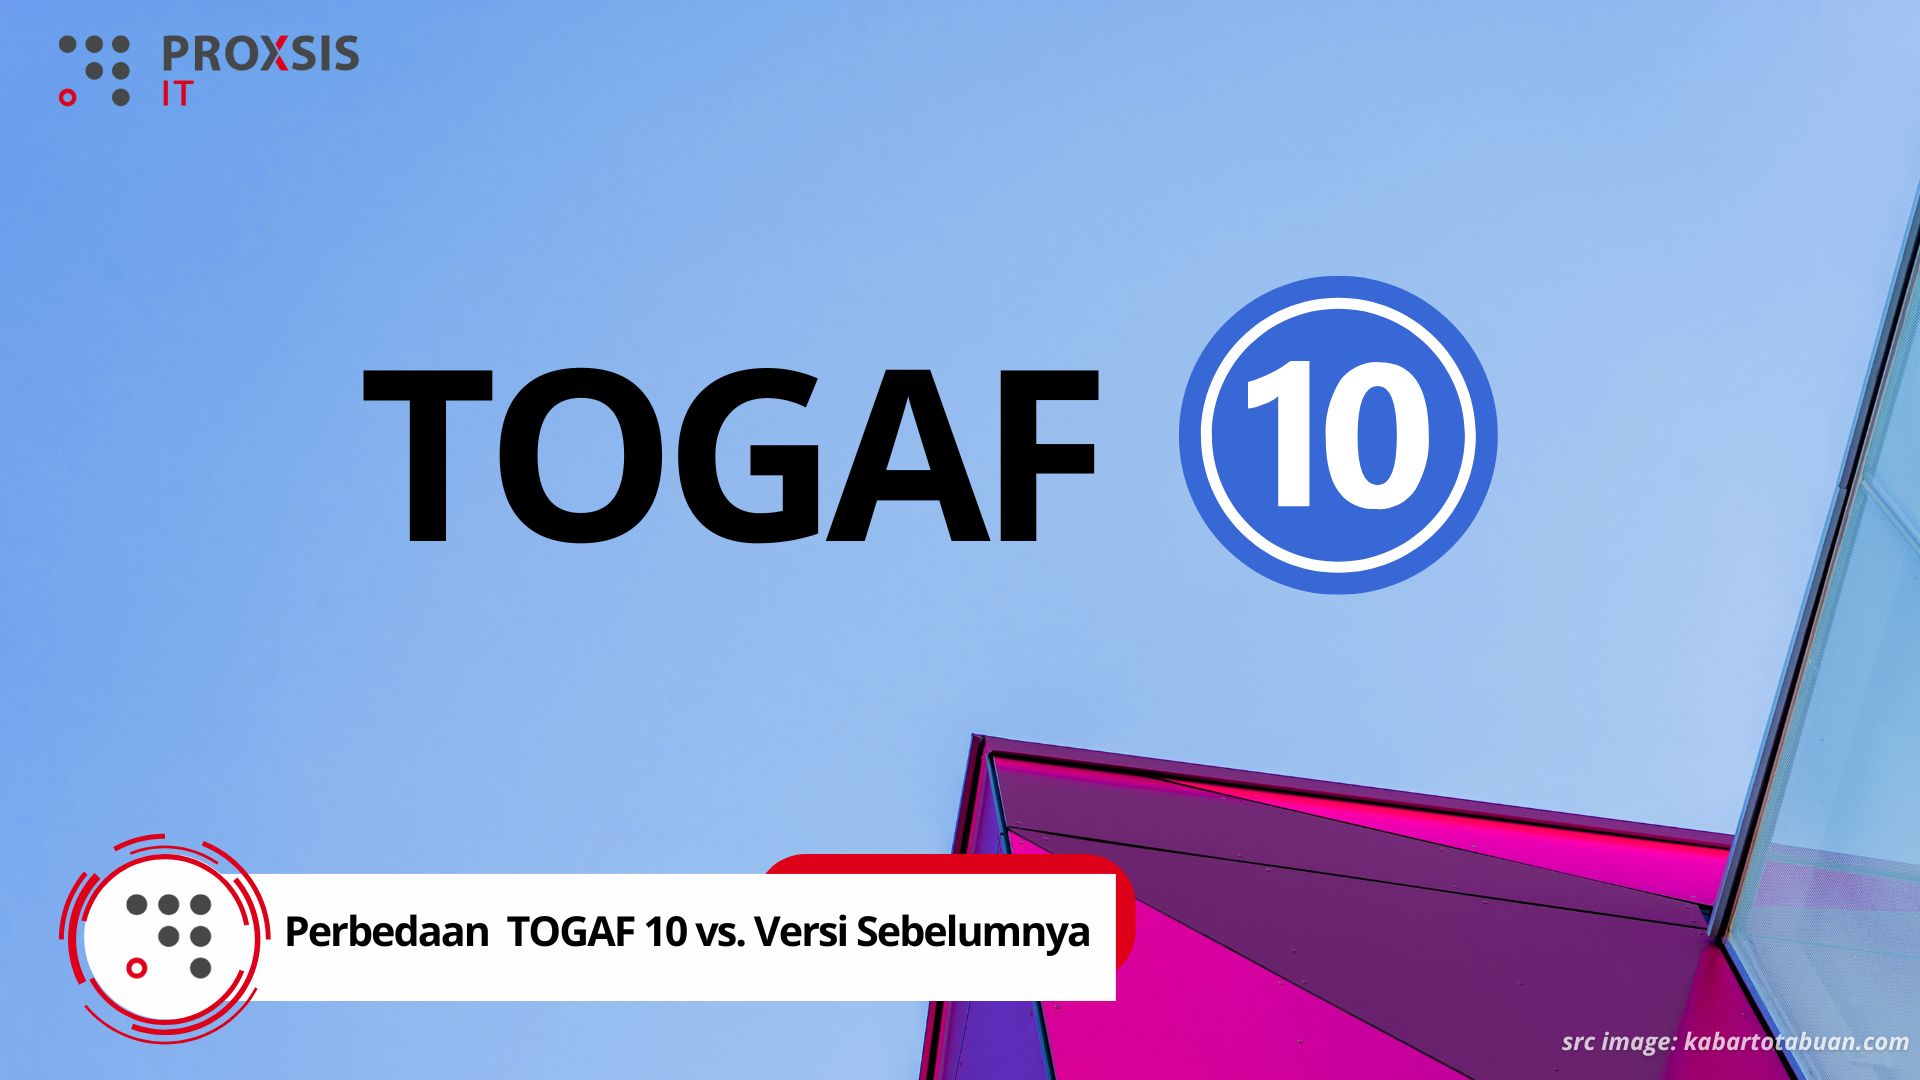 Memahami Perbedaan Utama TOGAF 10 vs Versi Sebelumnya